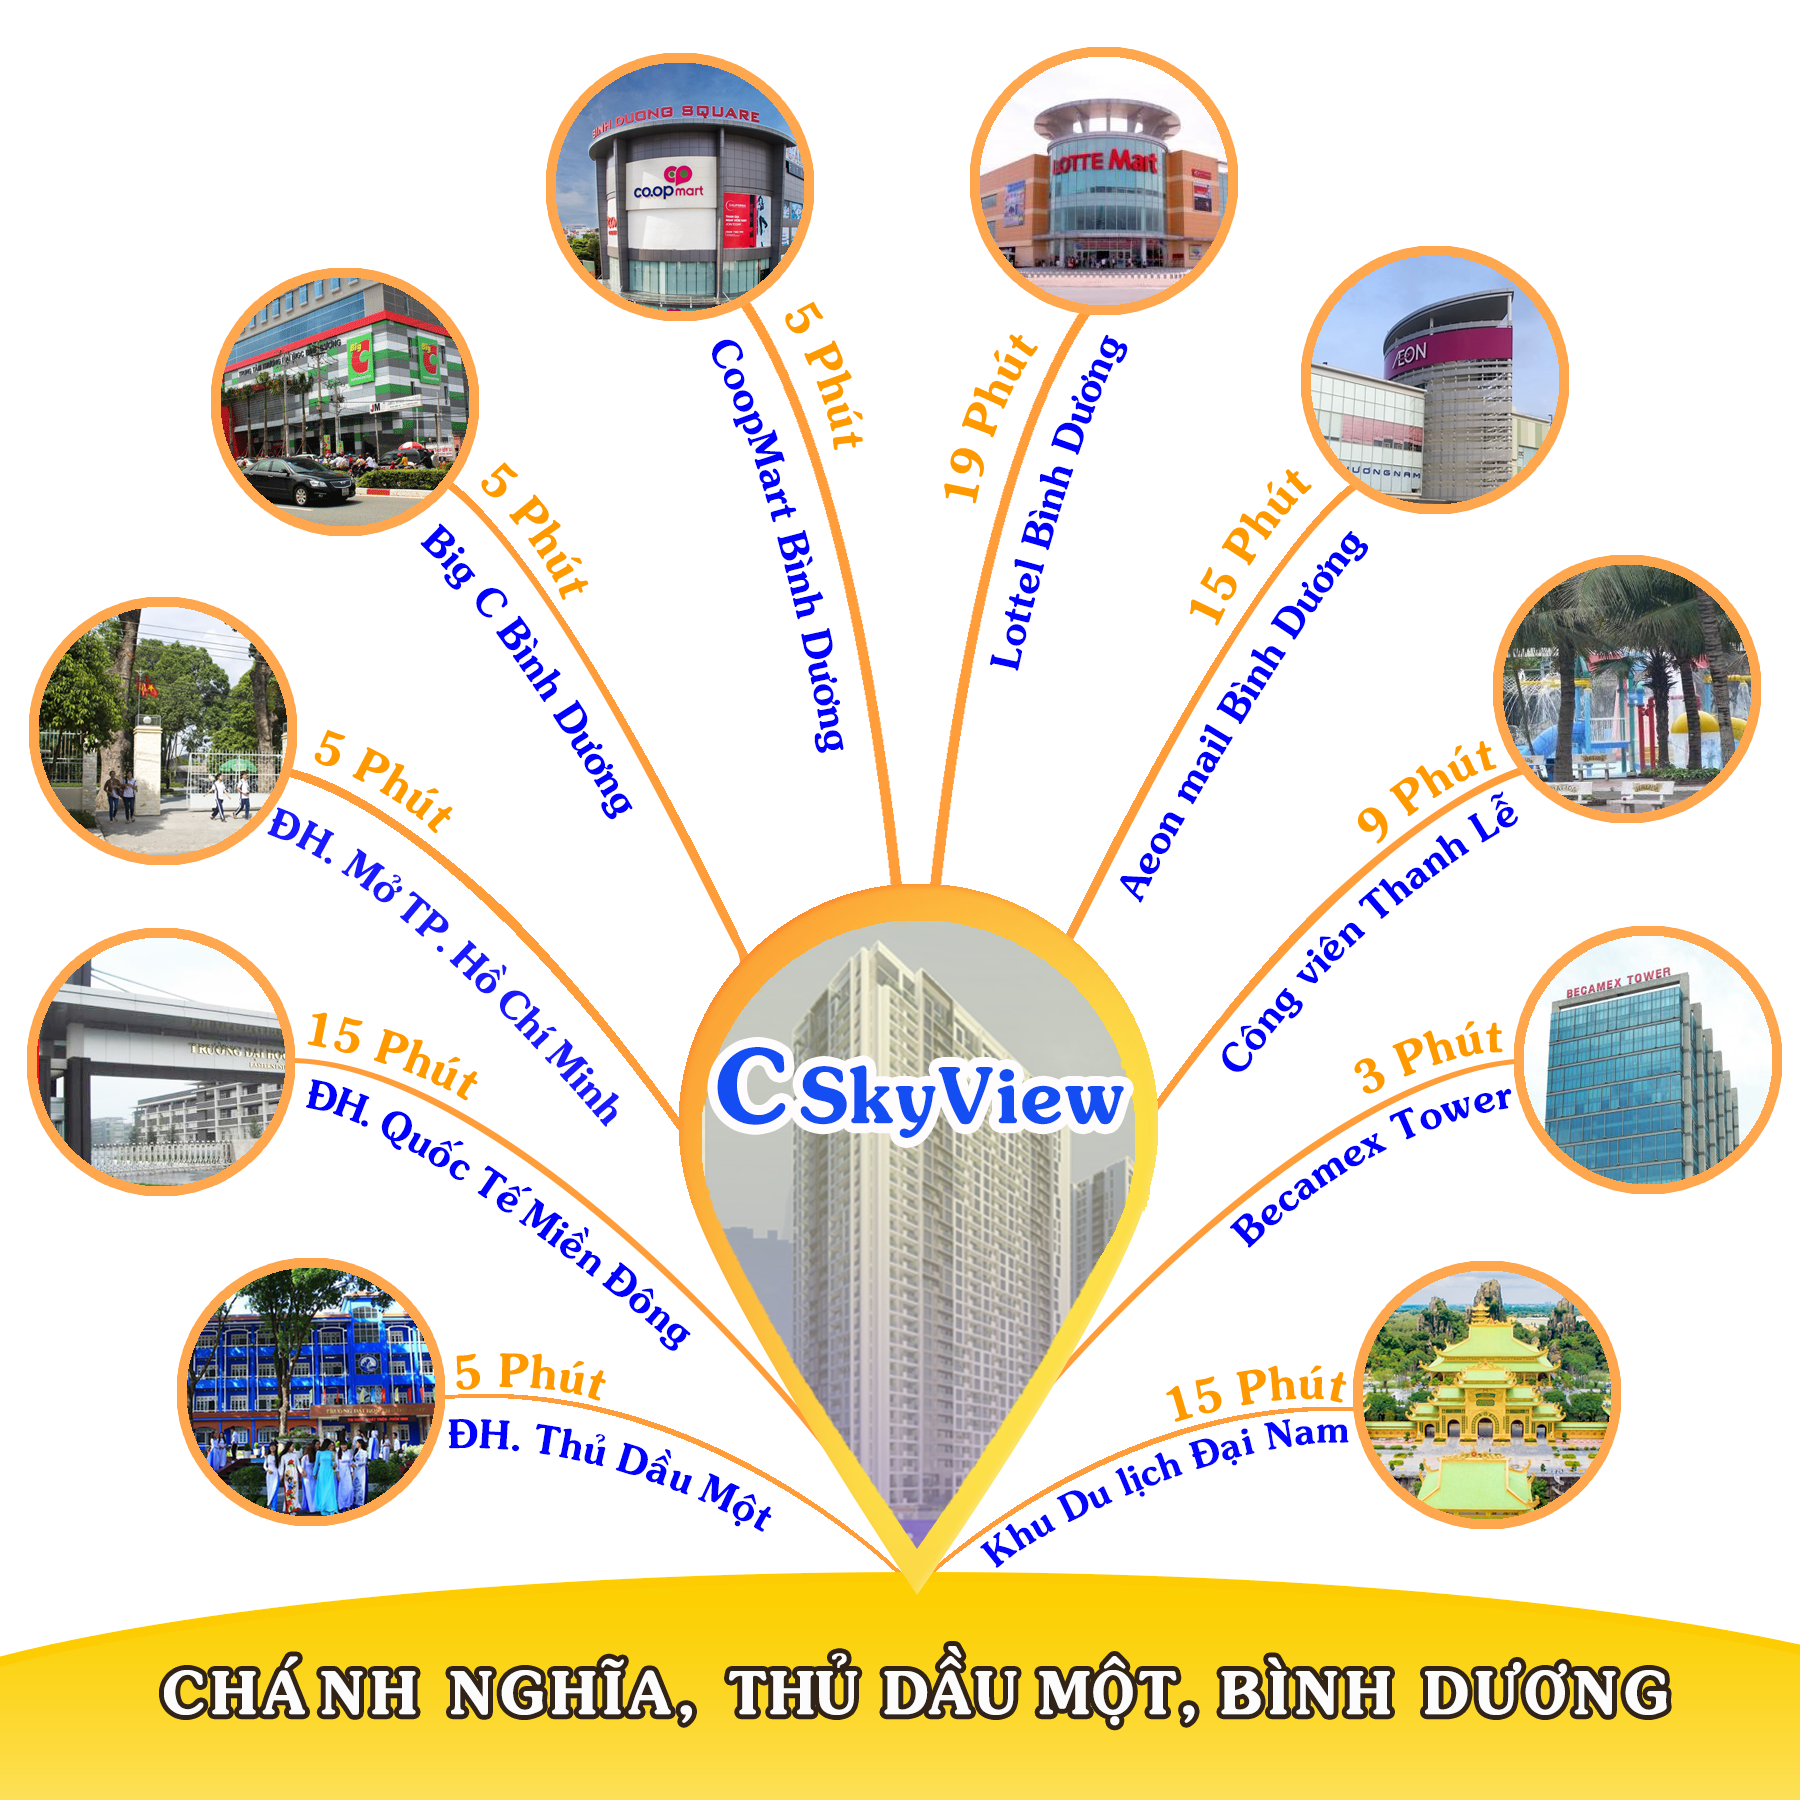 Căn hộ C SkyView Bình Dương có đầy đủ các tiện ích đẳng cấp đáp ứng nhu cầu khách hàng khi sở hữu nhà ở tại trung tâm thành phố Thủ Dầu Một.